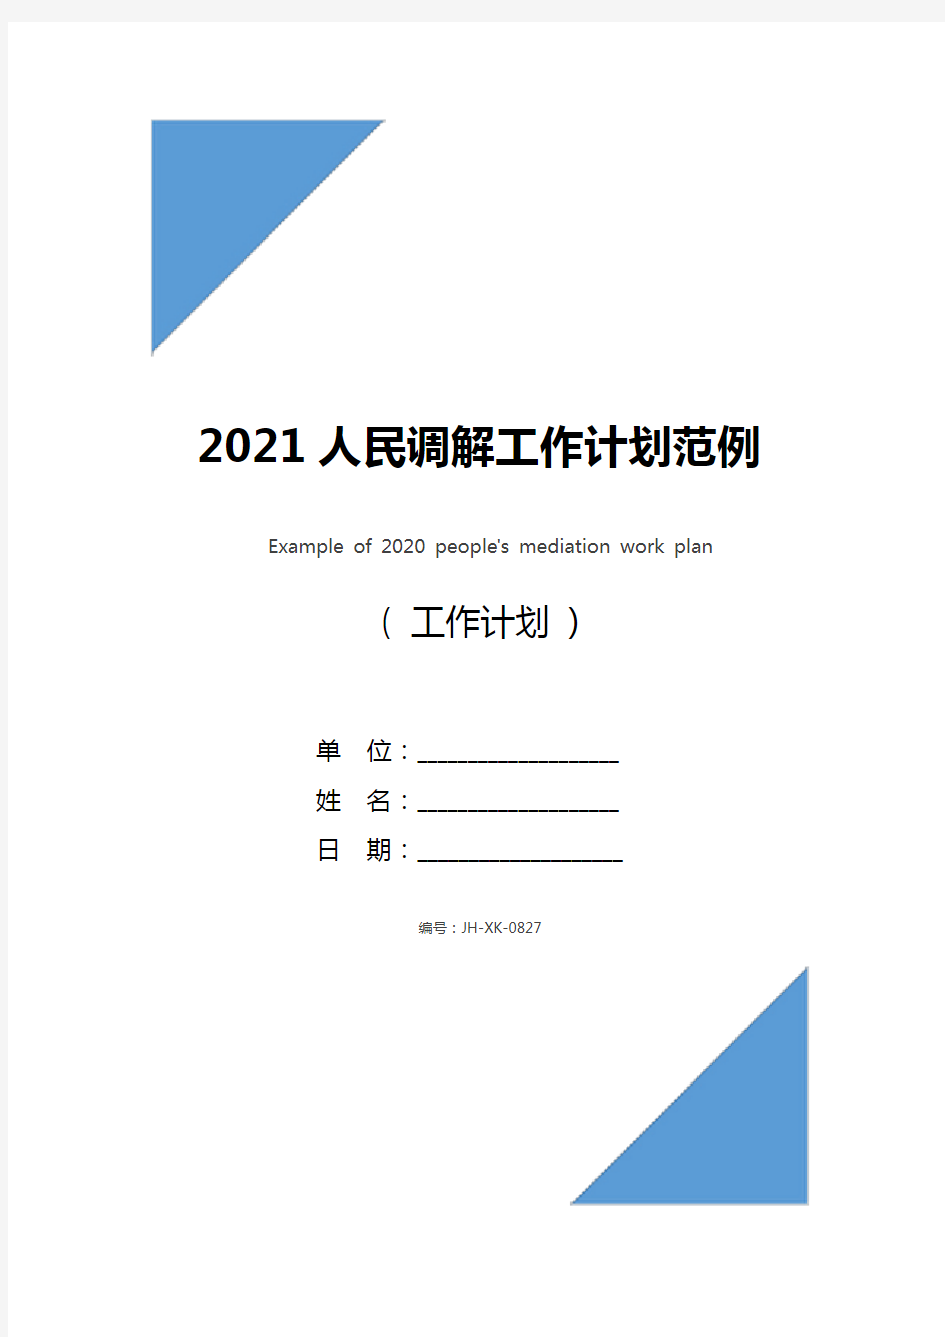 2021人民调解工作计划范例(通用版)